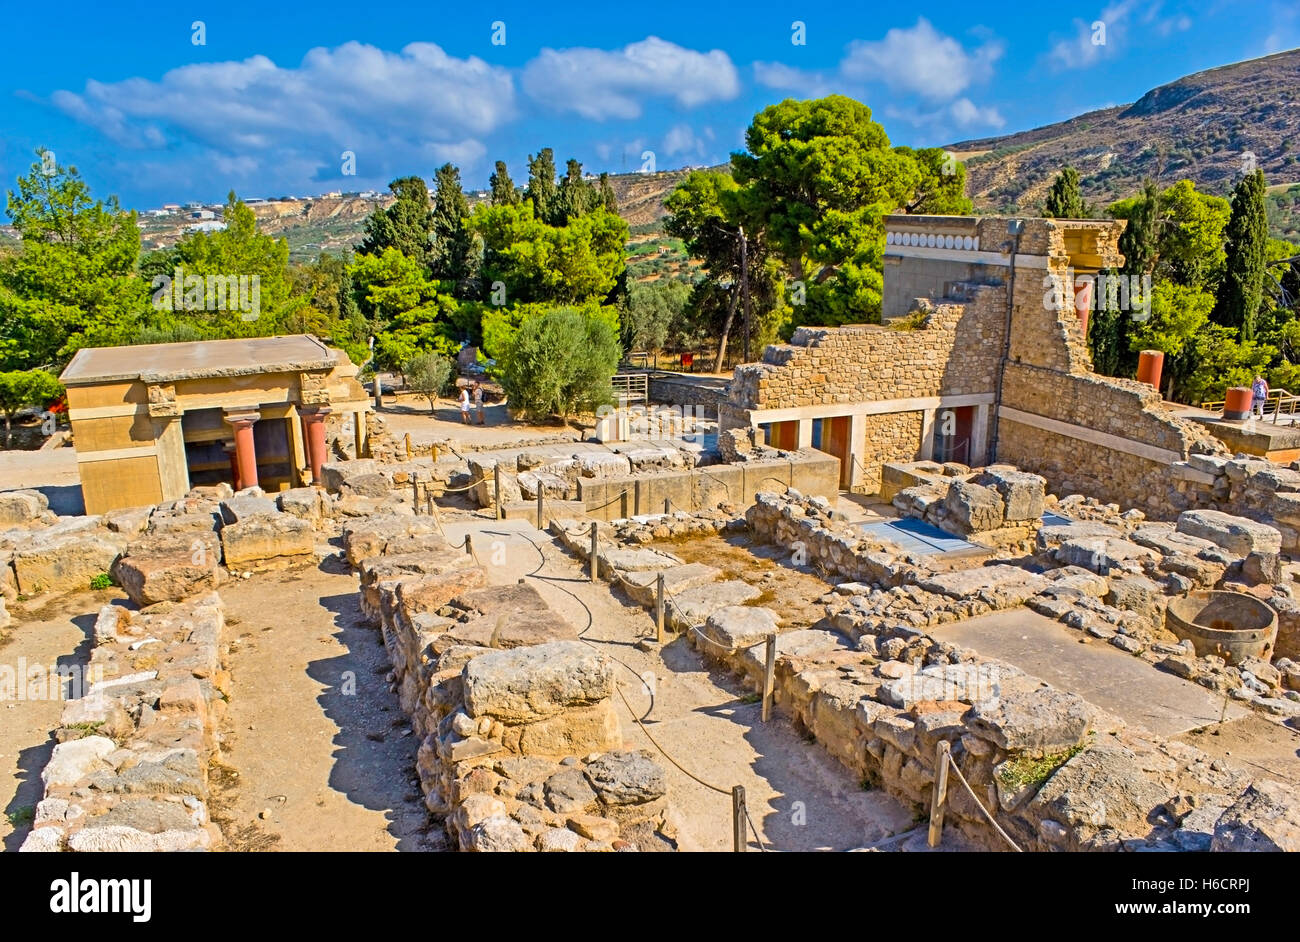 Die archäologische Stätte von Cnossos Palast neben Heraklion gelegen und umgeben von Ackerland mit Olive-Woods, Crete Stockfoto